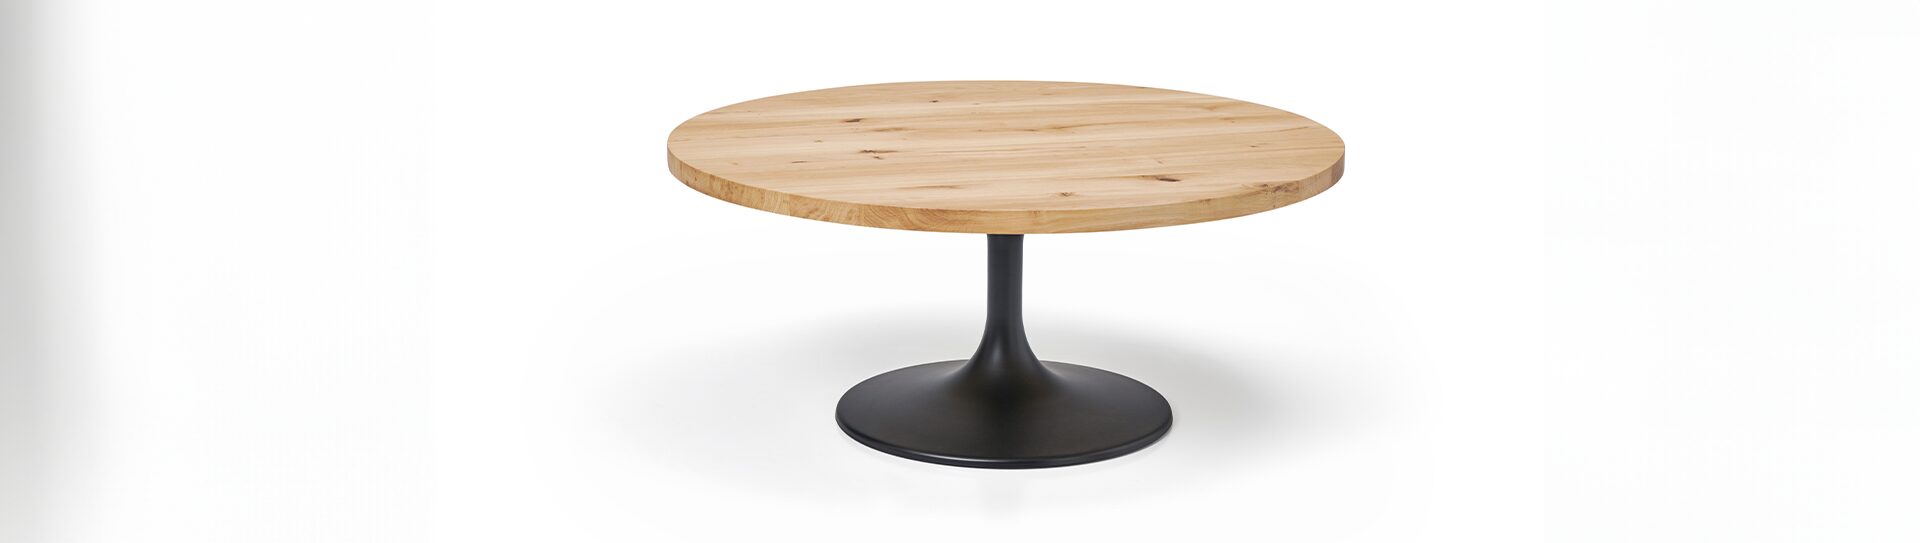 Table basse CUT Table basse ronde en bois clair avec un pied noir rond